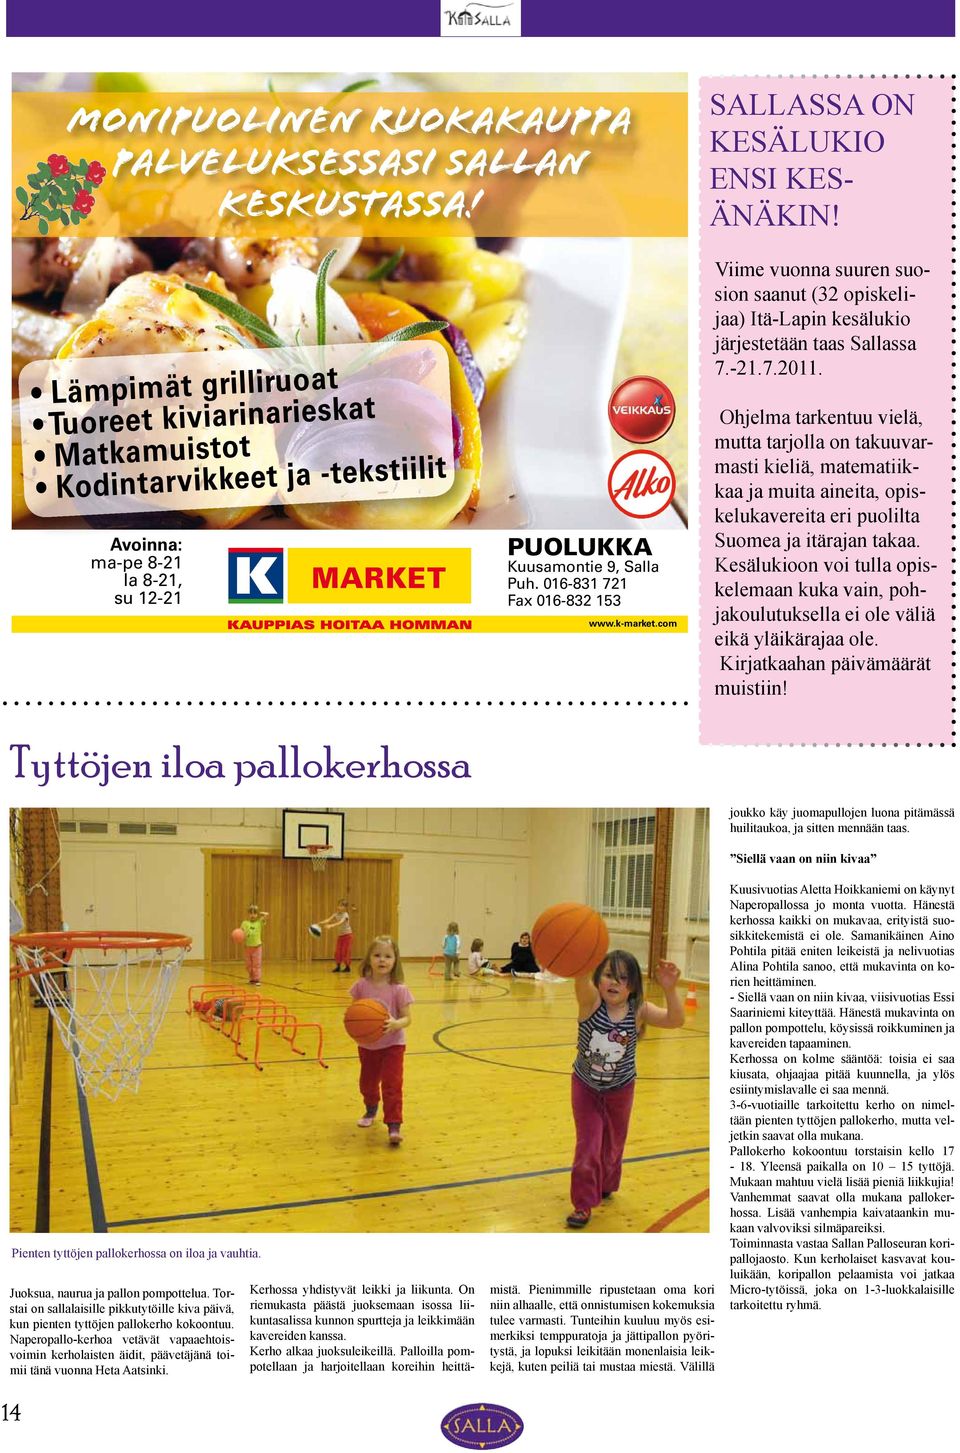 k-market.com Viime vuonna suuren suosion saanut (32 opiskelijaa) Itä-Lapin kesälukio järjestetään taas Sallassa 7.-21.7.2011.